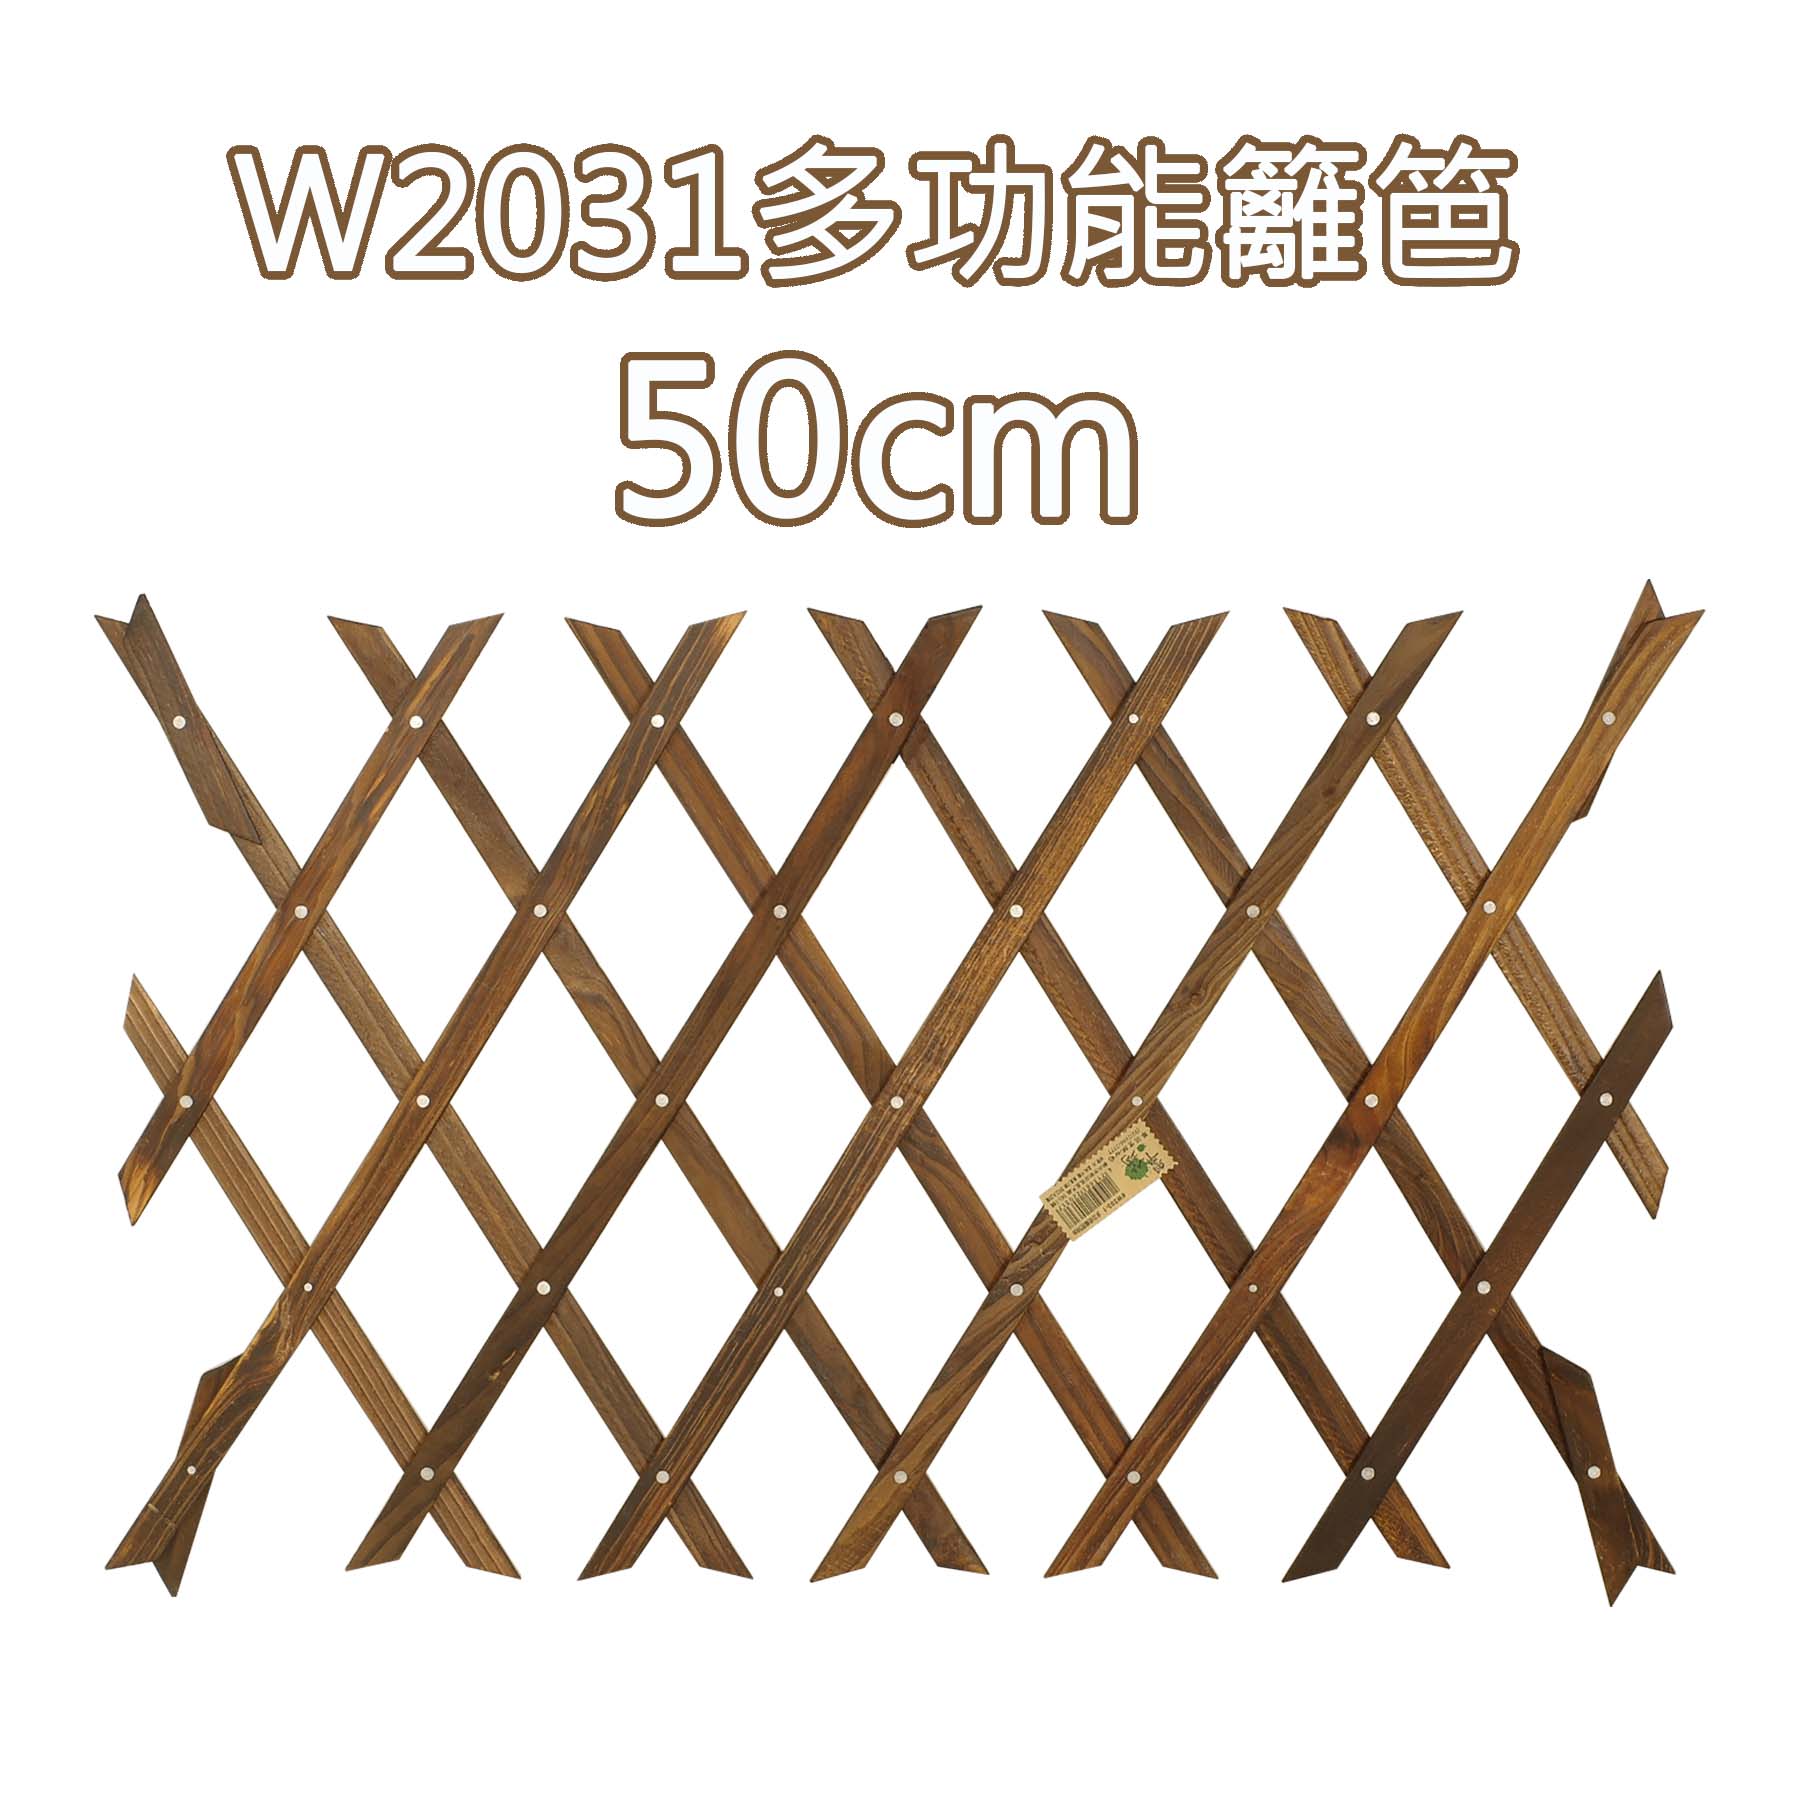 W2031多功能籬笆50cm